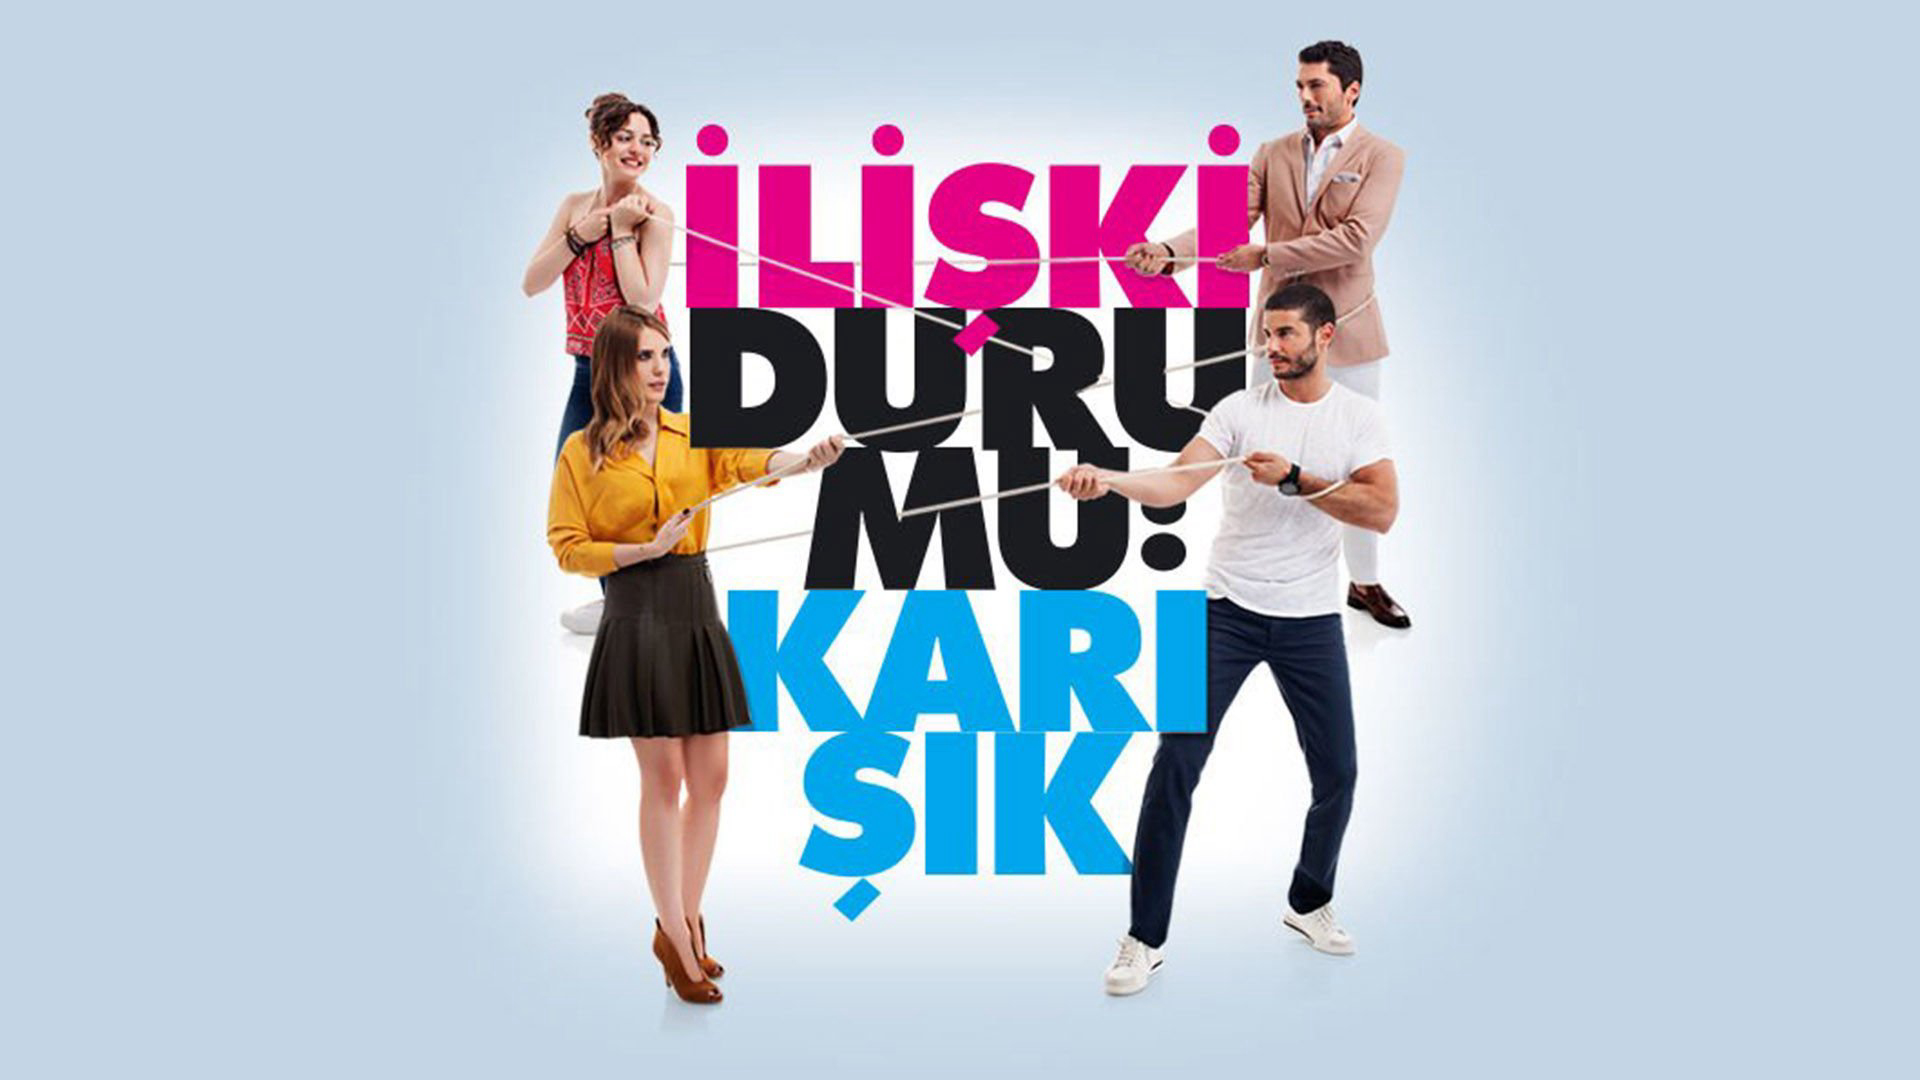 Iliski Durumu Karisik (Full House) / Iliski Durumu Karisik (Full House) (2016)